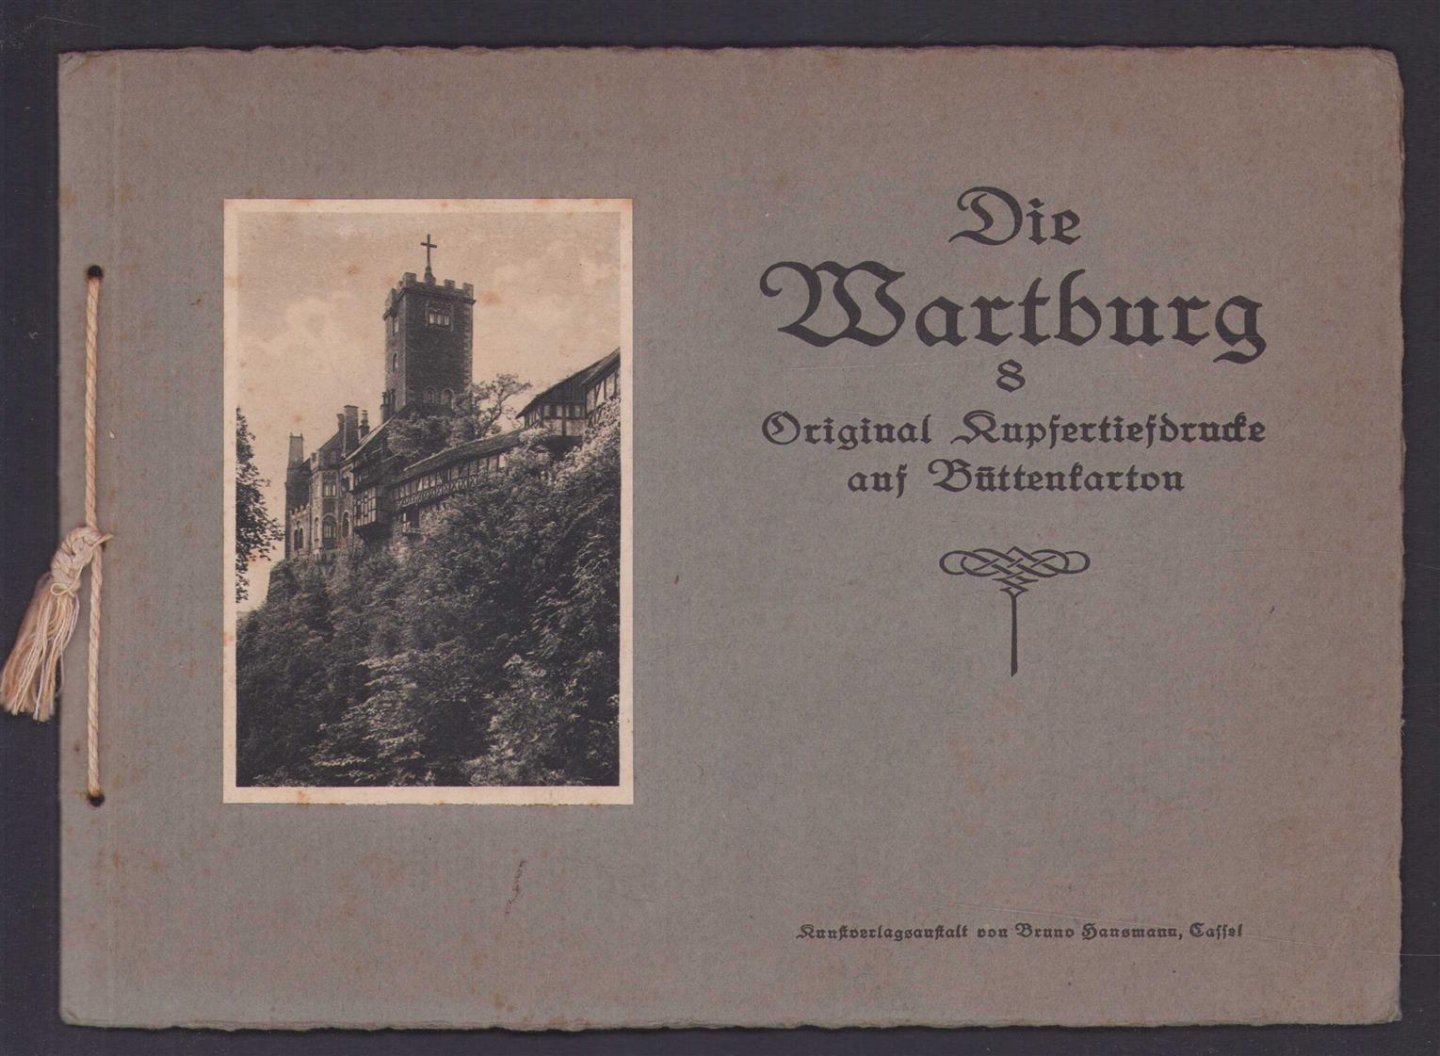 Kunstverlagsanstalt Bruno Hansmann - (TOERISME / TOERISTEN BROCHURE) Die Wartburg 8 original Kupfertiefdrucke auf Büttenkarton